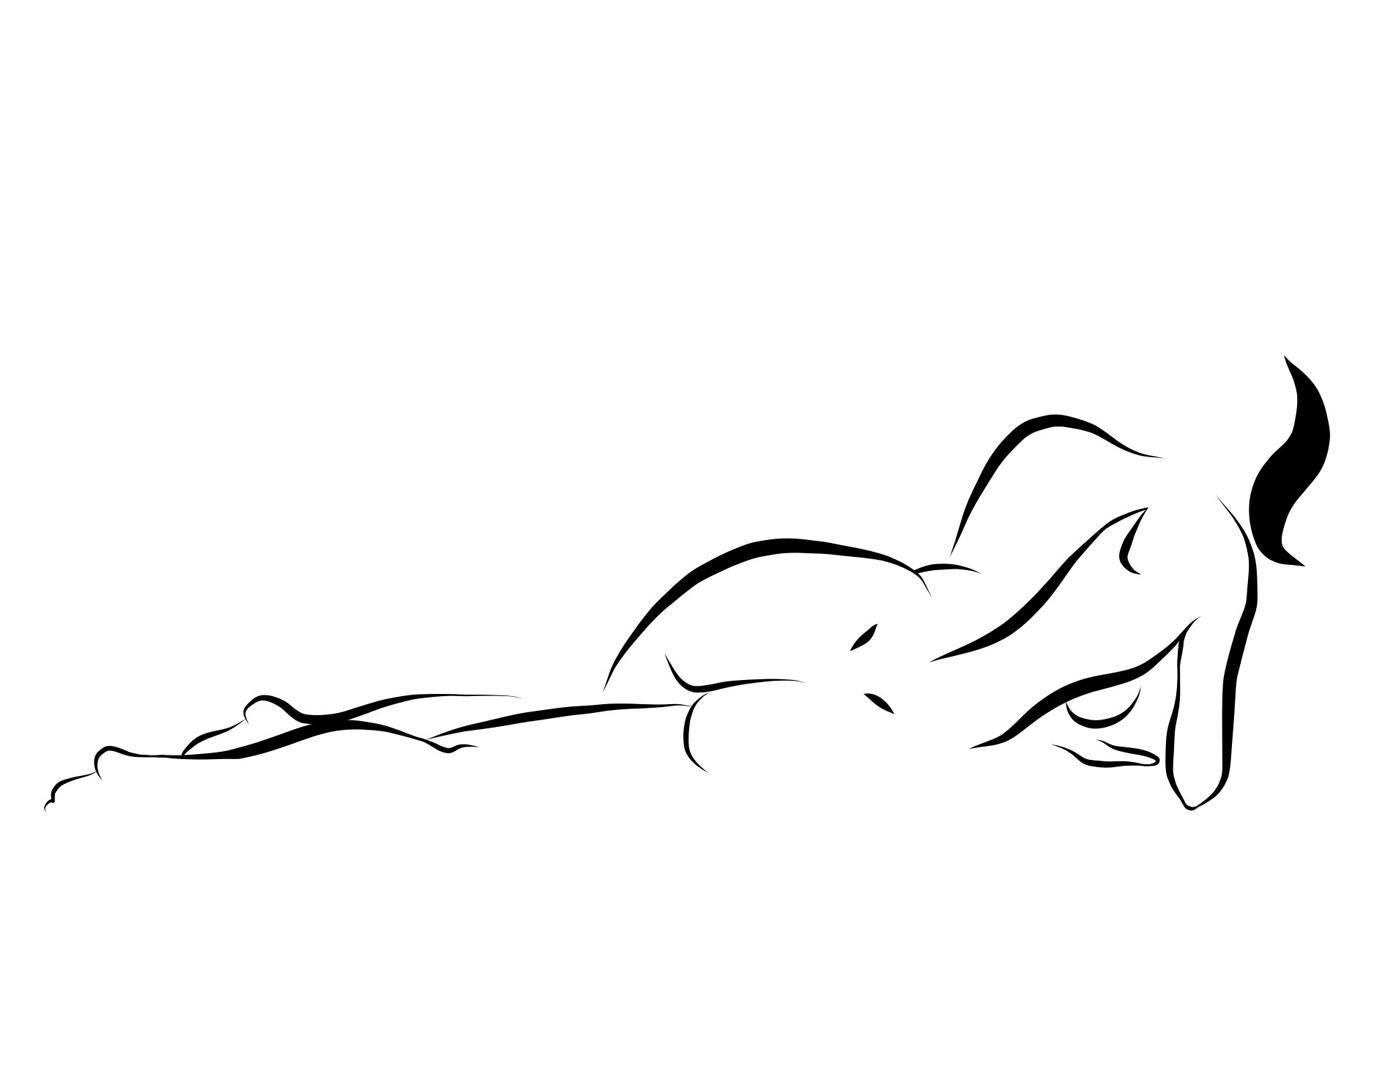 Michael Binkley Nude Print – Haiku #30, 6/50 - Digitale Vector-Zeichnung einer liegenden weiblichen Aktfigur in Akt, weiblicher Akt